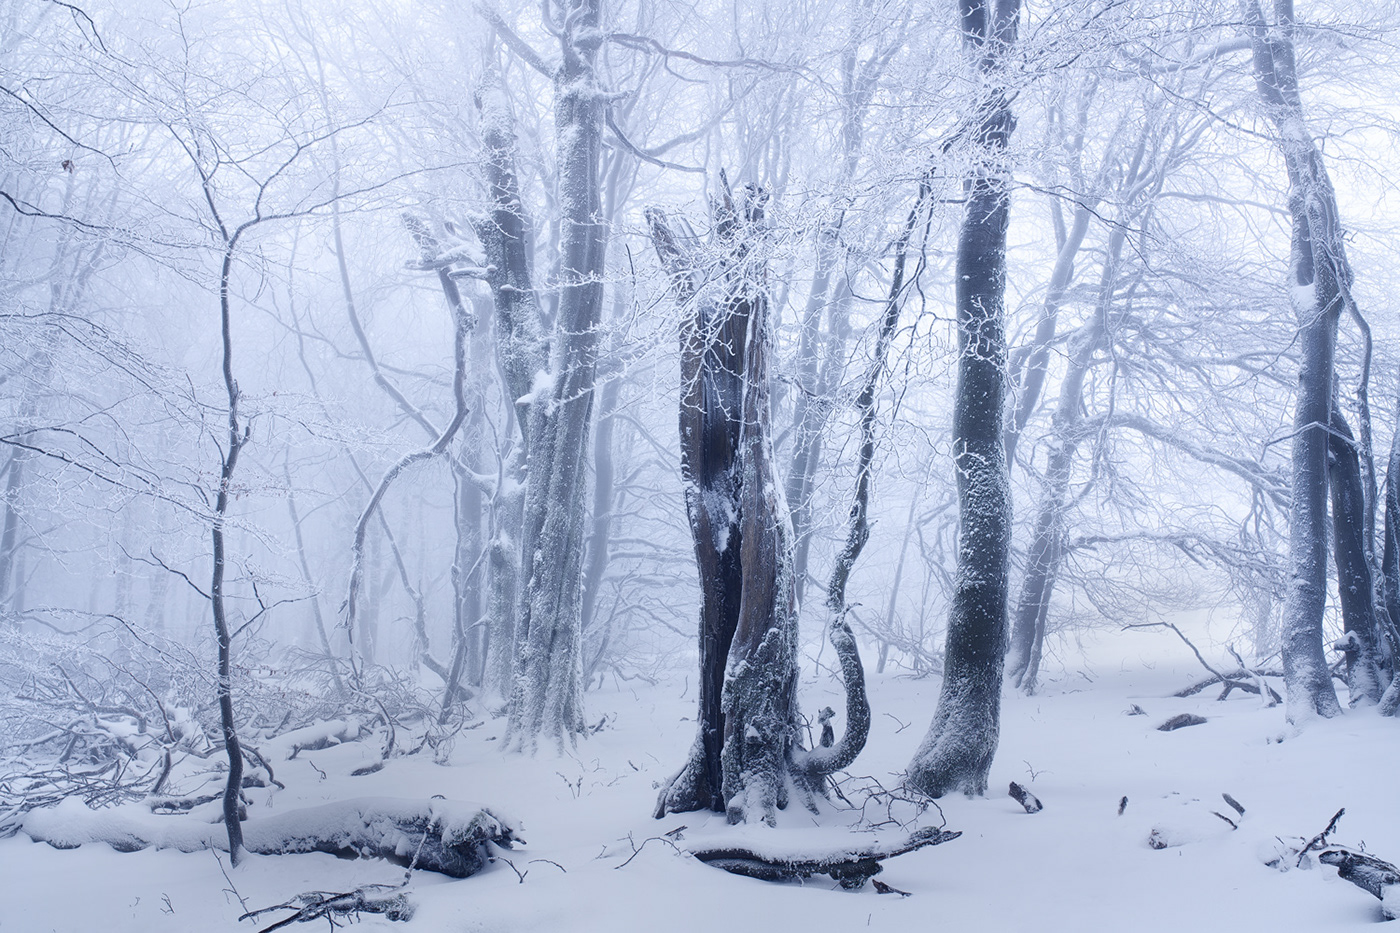 Beech enchanted fairytale forest frozen hoarfrost mist snow Treescape winter